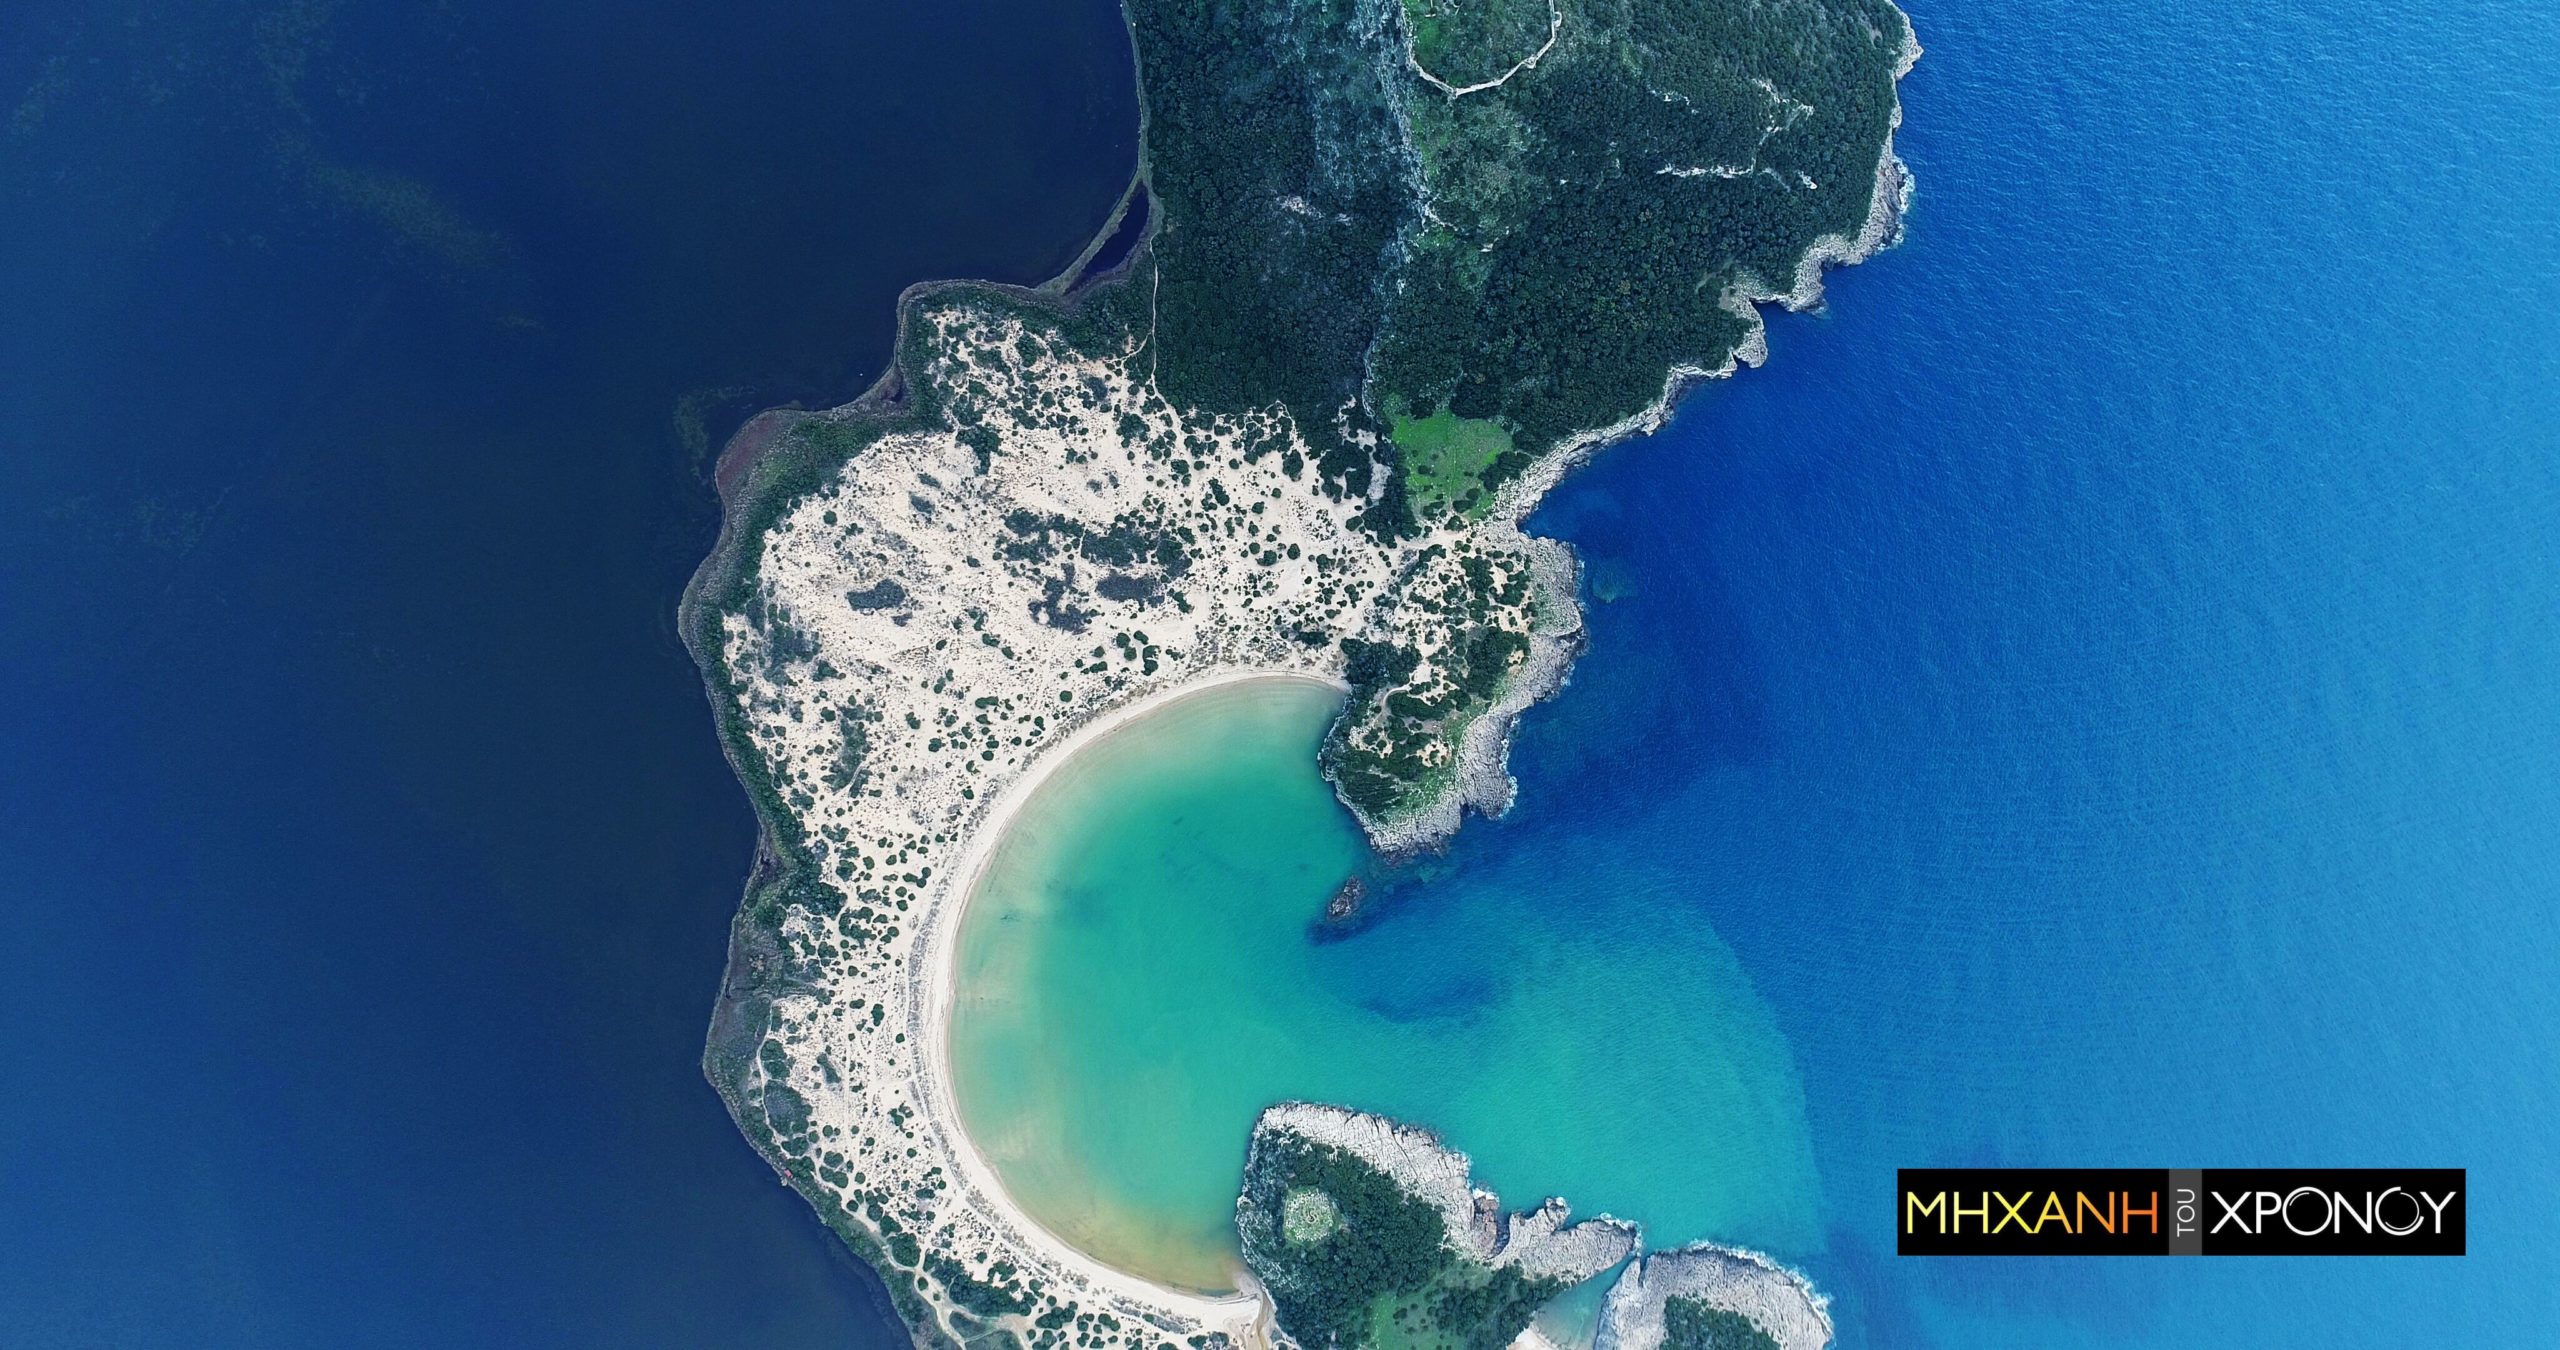 Η παραλία σε σχήμα Ωμέγα που ψηφίστηκε μέσα στις 10 καλύτερες της Ευρώπης. Ο ρόλος της περιοχής στην ελληνική επανάσταση